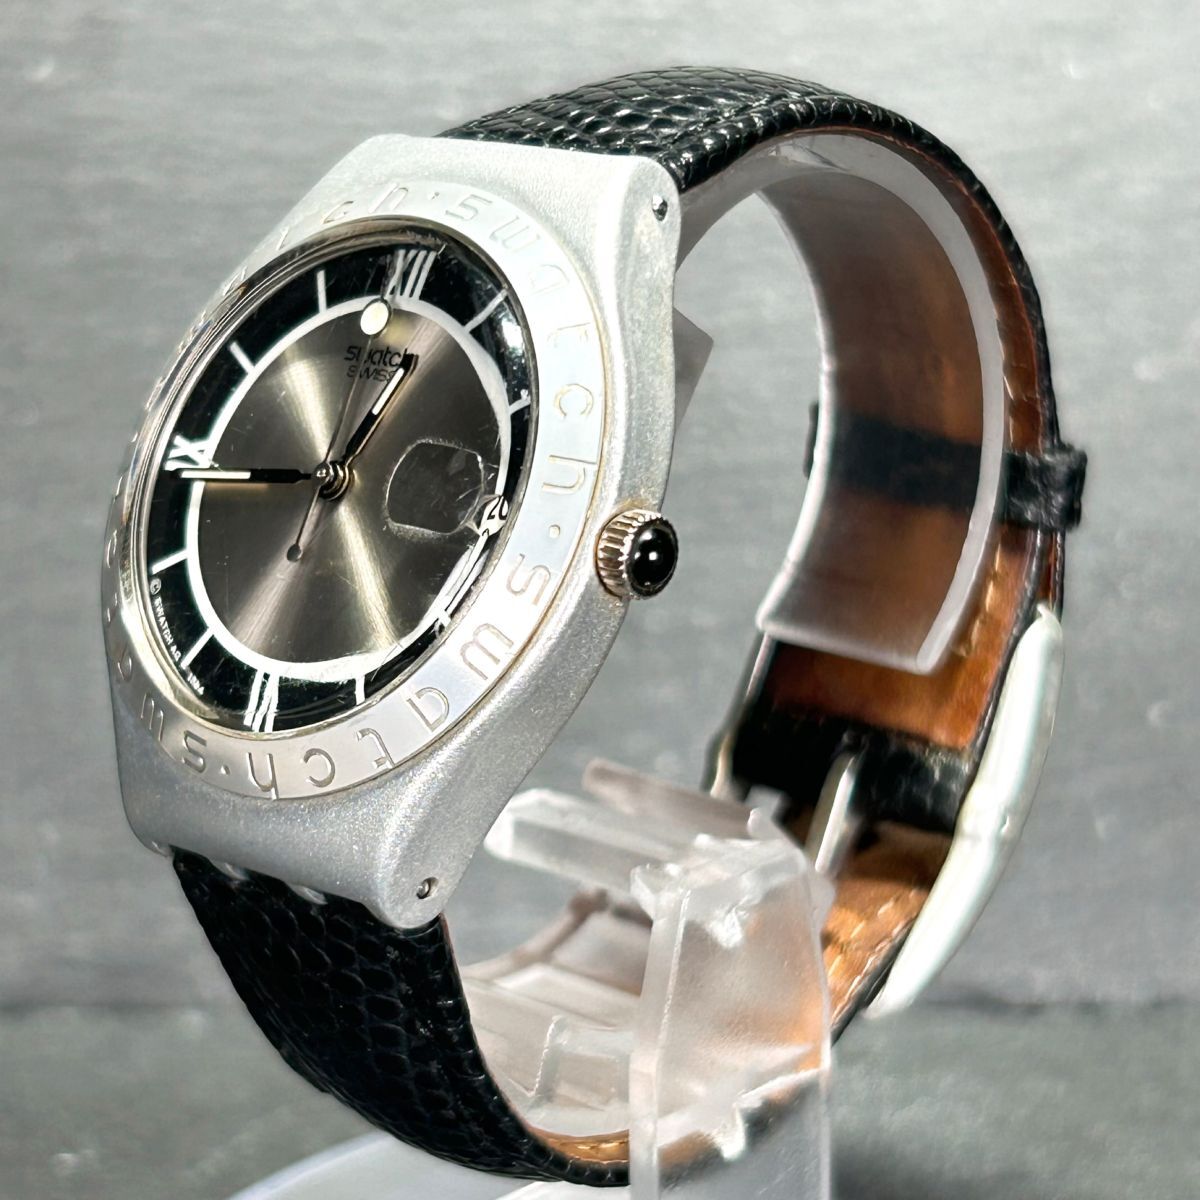 SWATCH Swatch IRONY Irony AG1994 наручные часы кварц аналог календарь кожаный ремень aluminium легкий серебряный рабочее состояние подтверждено 